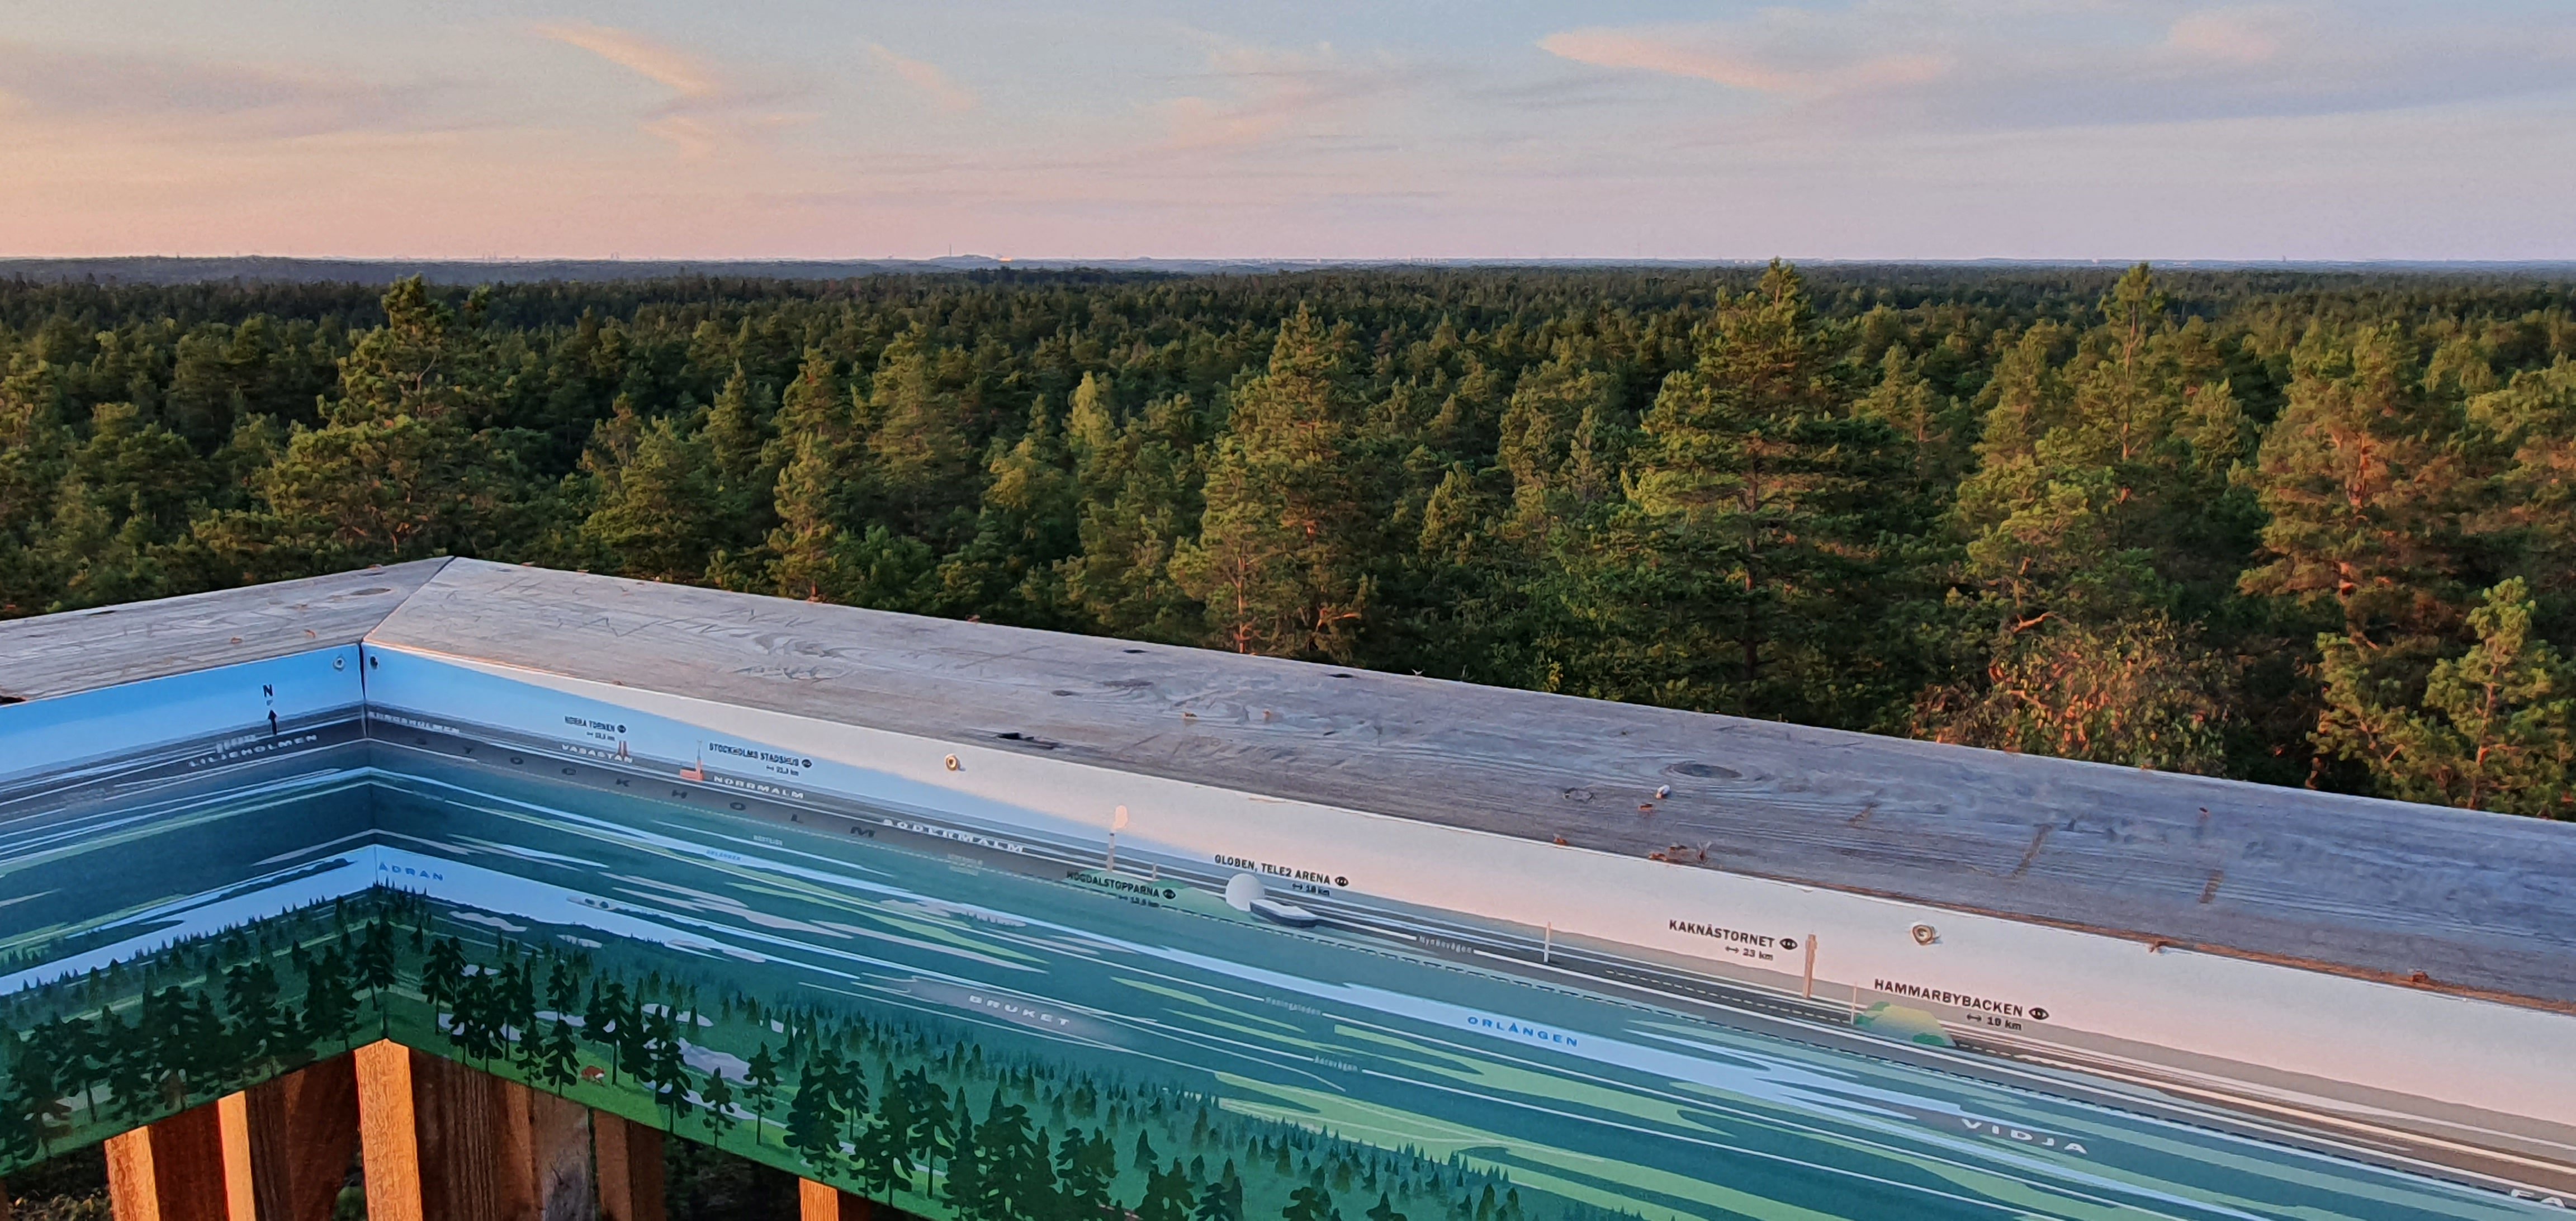 Översta plattformens räcke har en fastsatt panoramavy som följer hela räcket. Utsikten visar en vidsträckt skog och himmel.